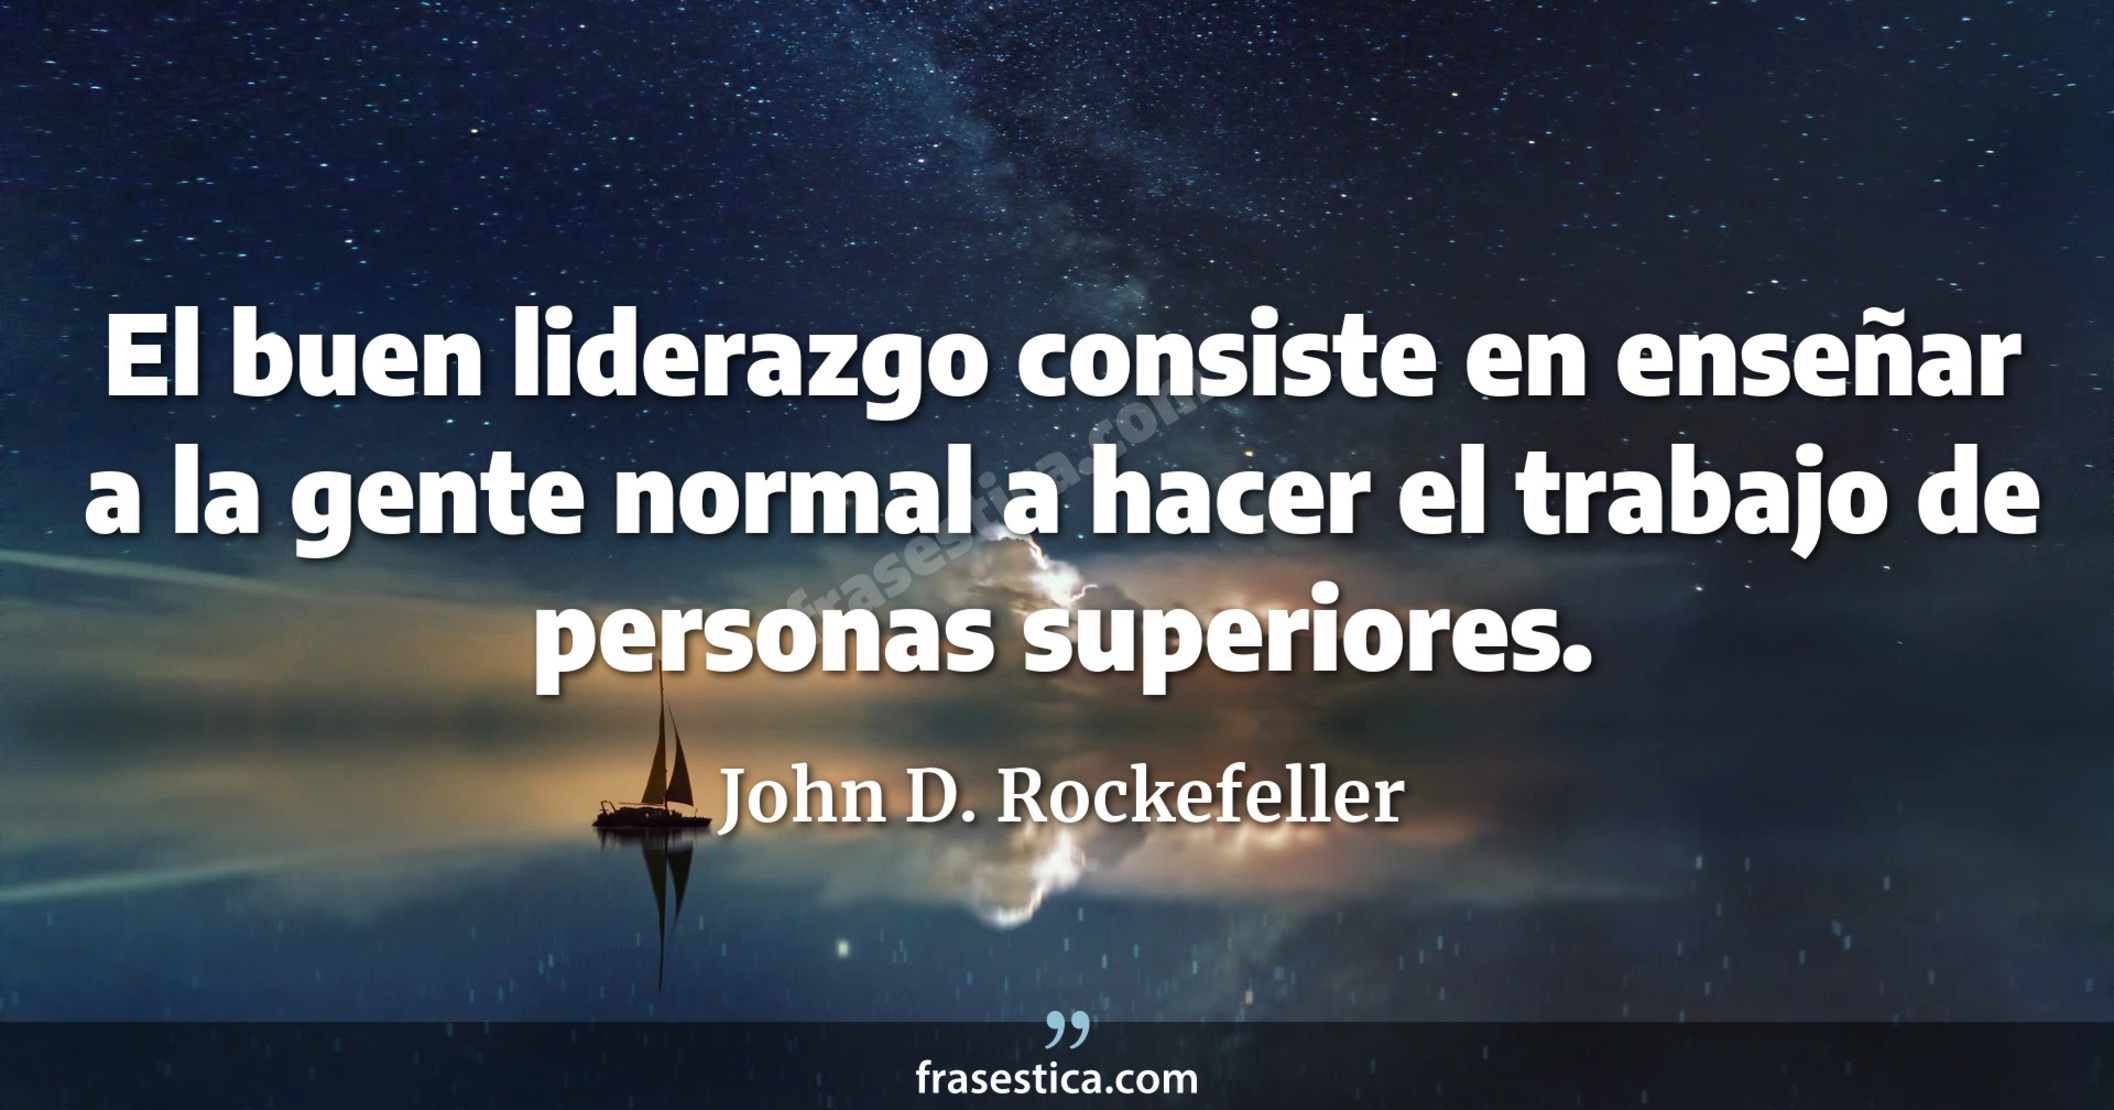 El buen liderazgo consiste en enseñar a la gente normal a hacer el trabajo de personas superiores. - John D. Rockefeller